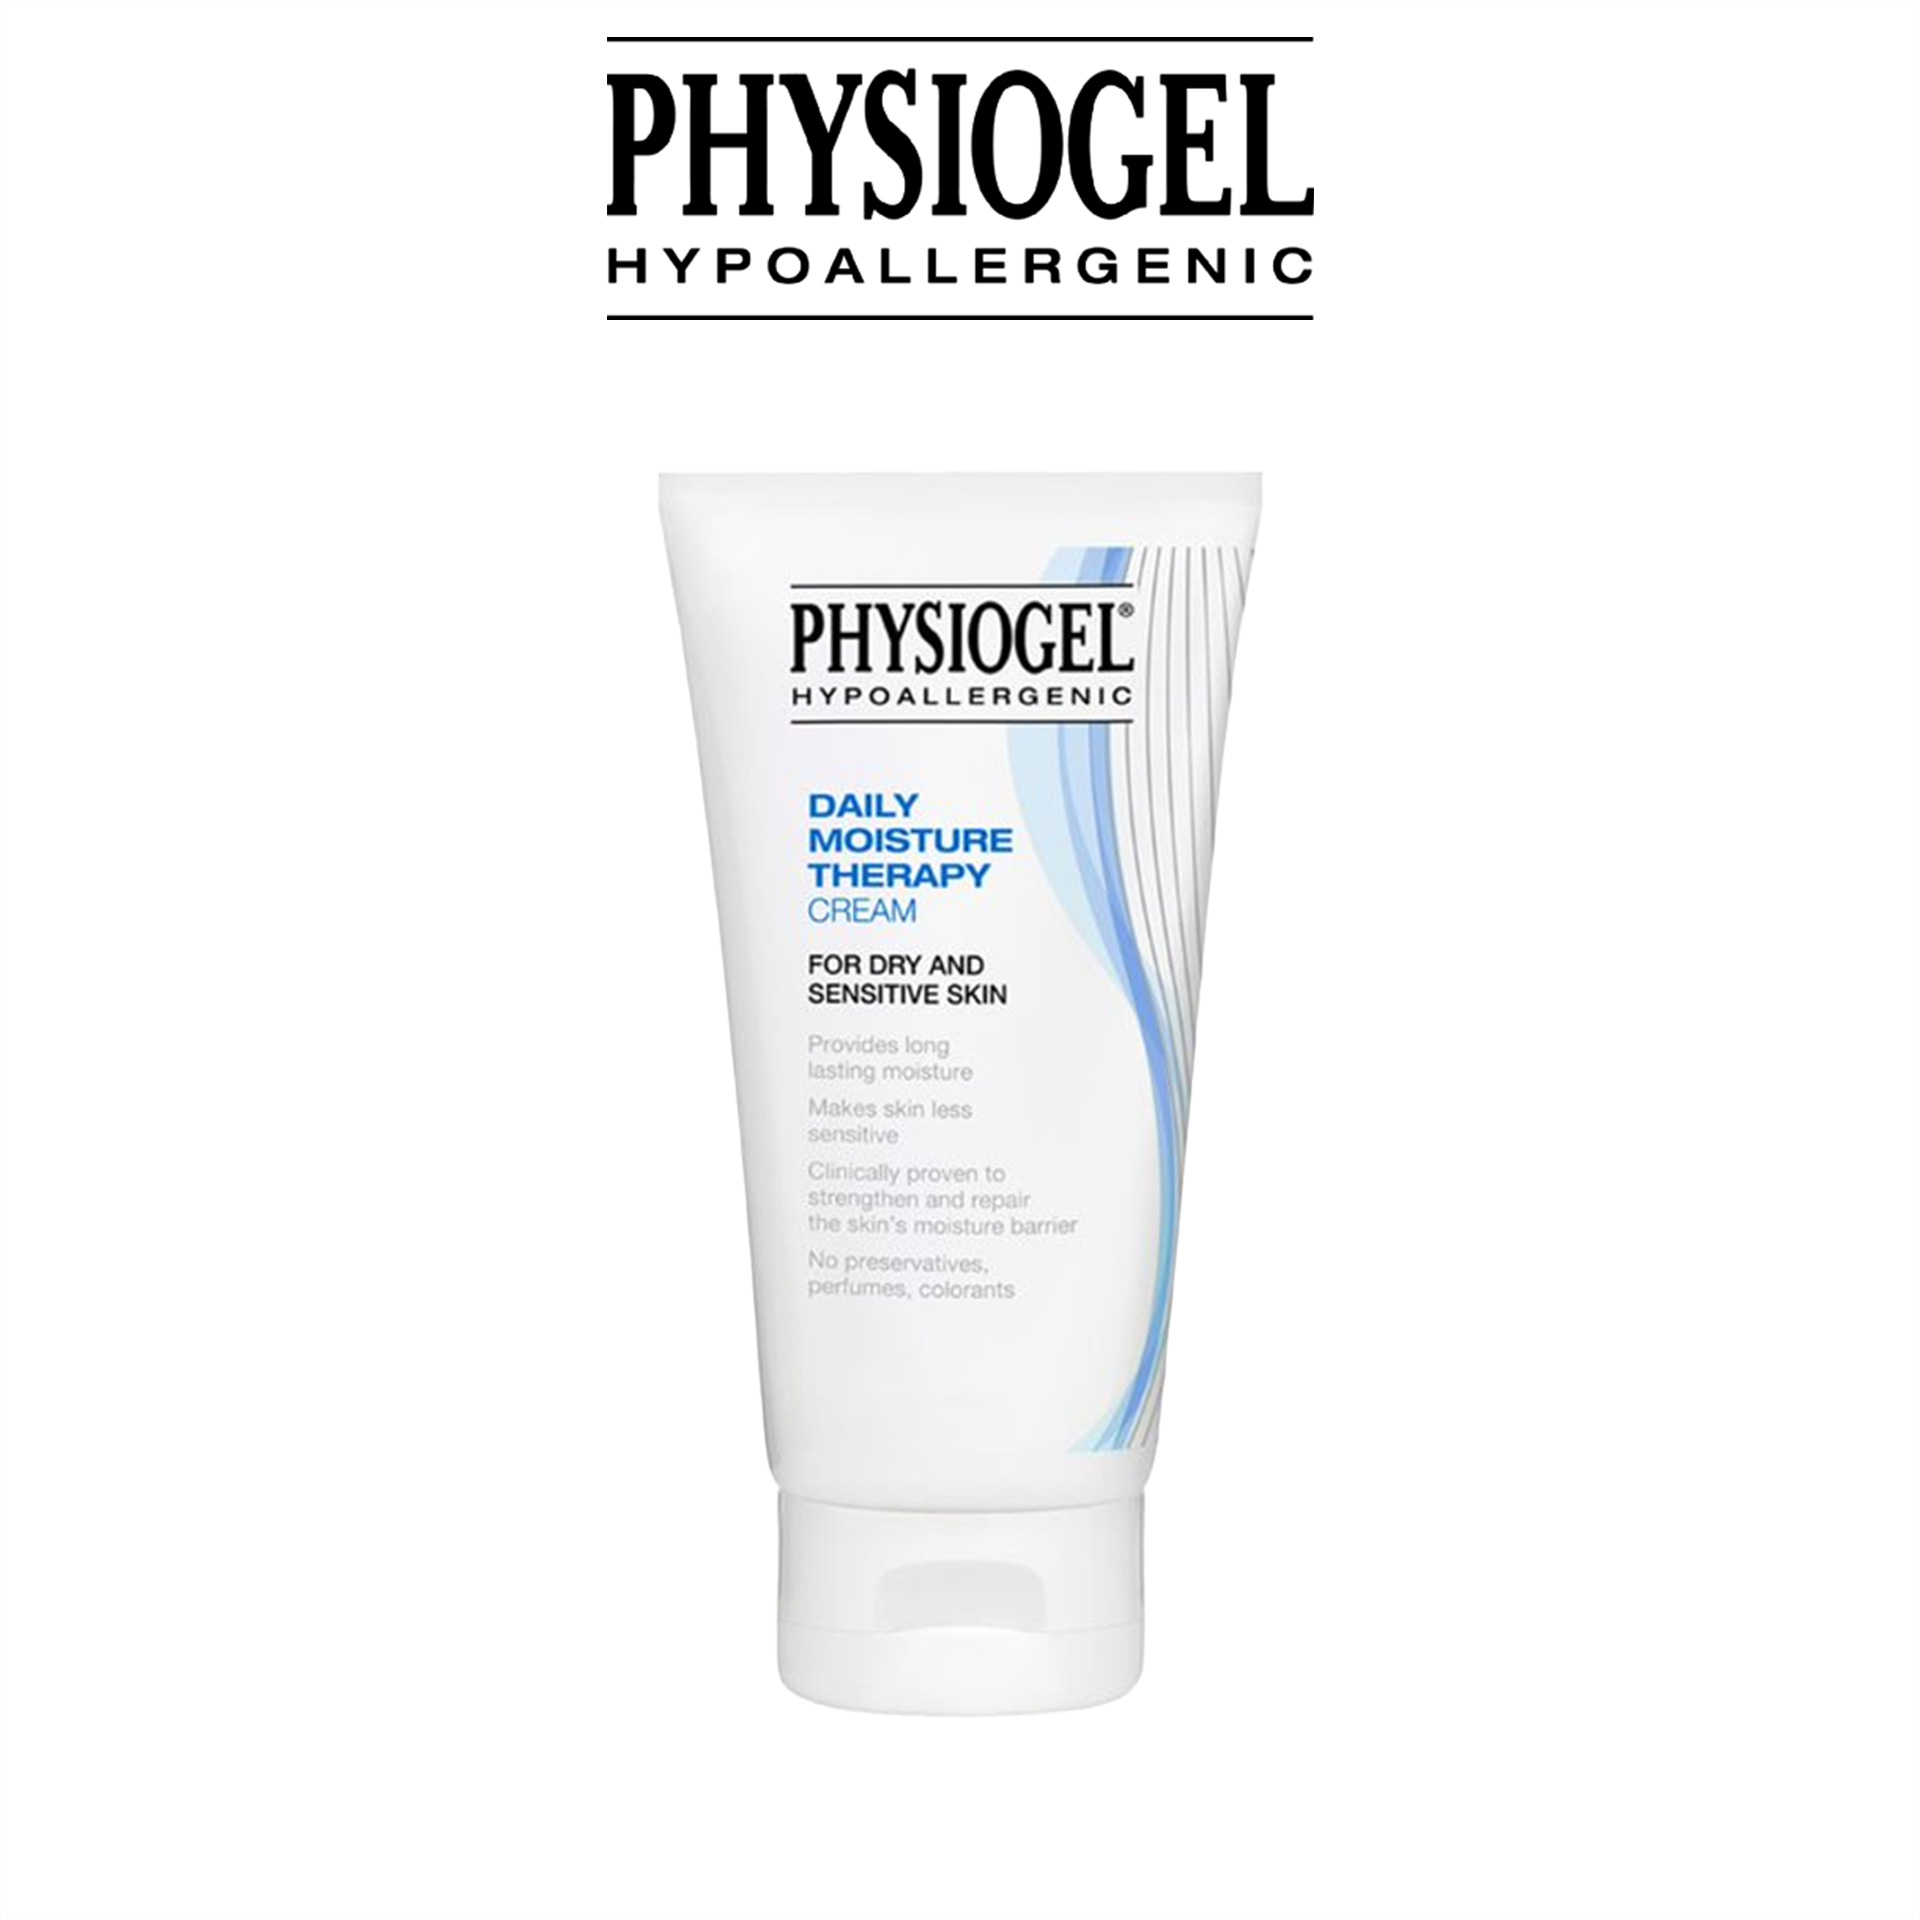 Kem dưỡng ẩm dịu nhẹ Physiogel Daily Moisture Therapy Cream dành cho da khô và da nhạy cảm 150ml